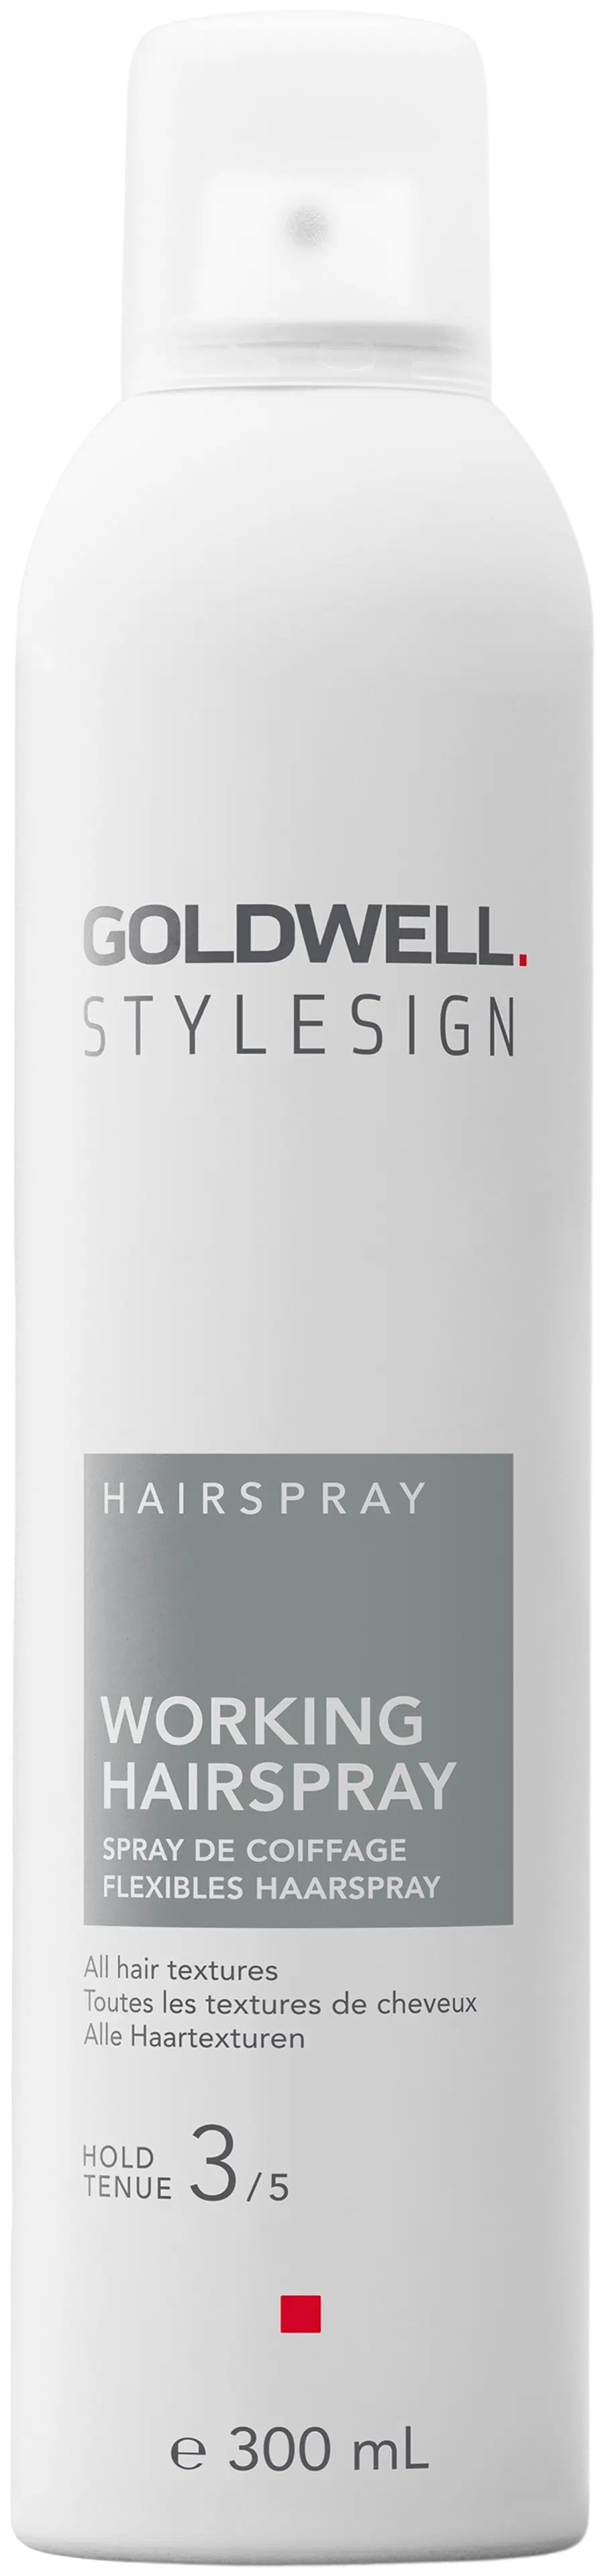 Goldwell StyleSign Hairspray Working Hairspray työstettävä hiuskiinne 300 ml